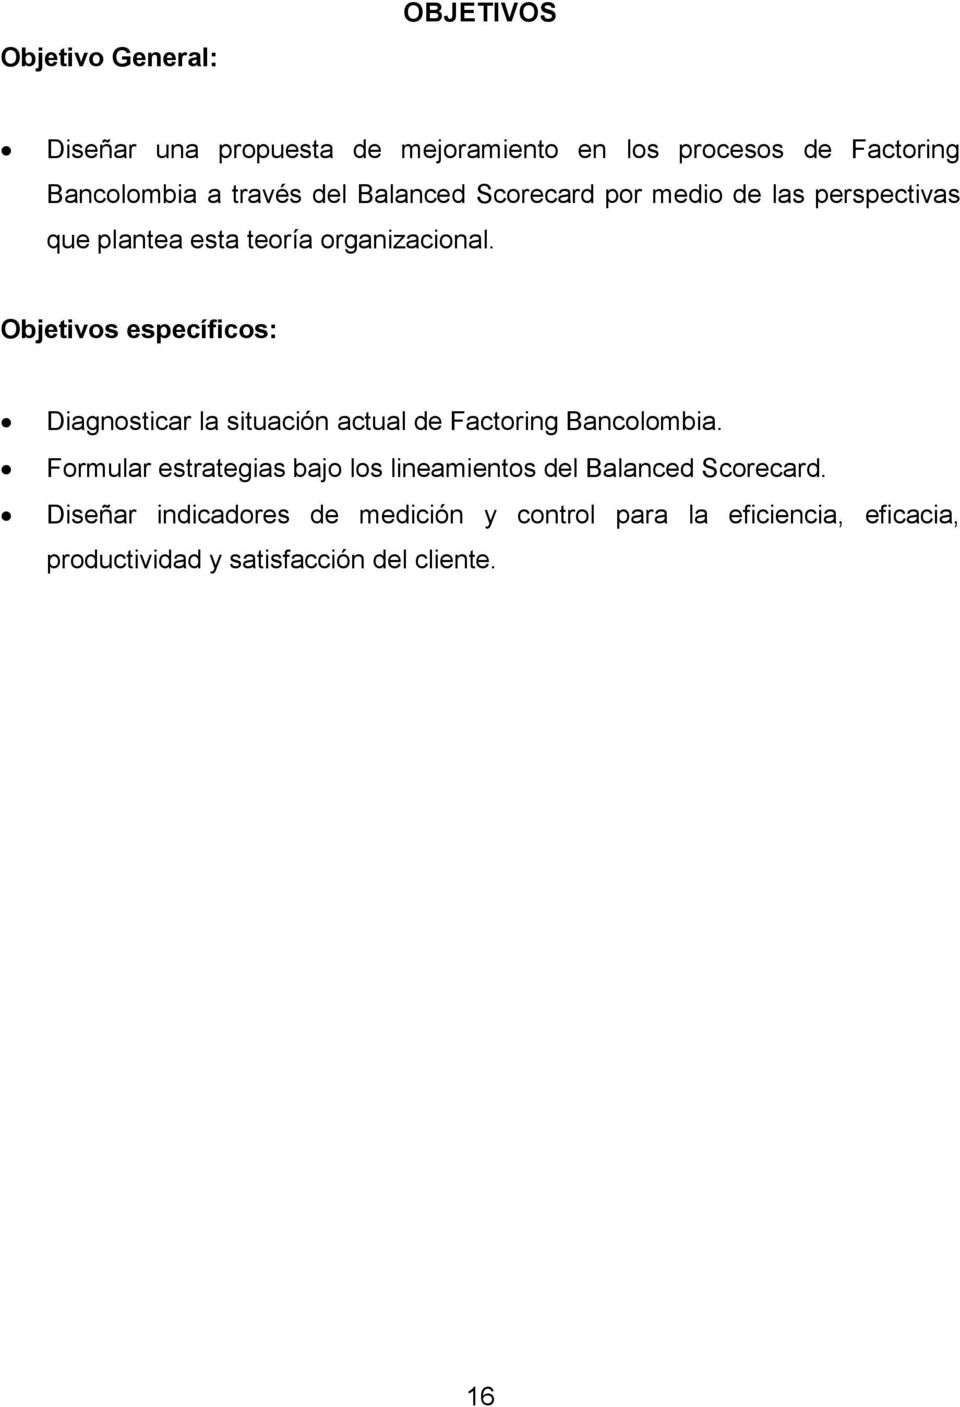 Objetivos específicos: Diagnosticar la situación actual de Factoring Bancolombia.